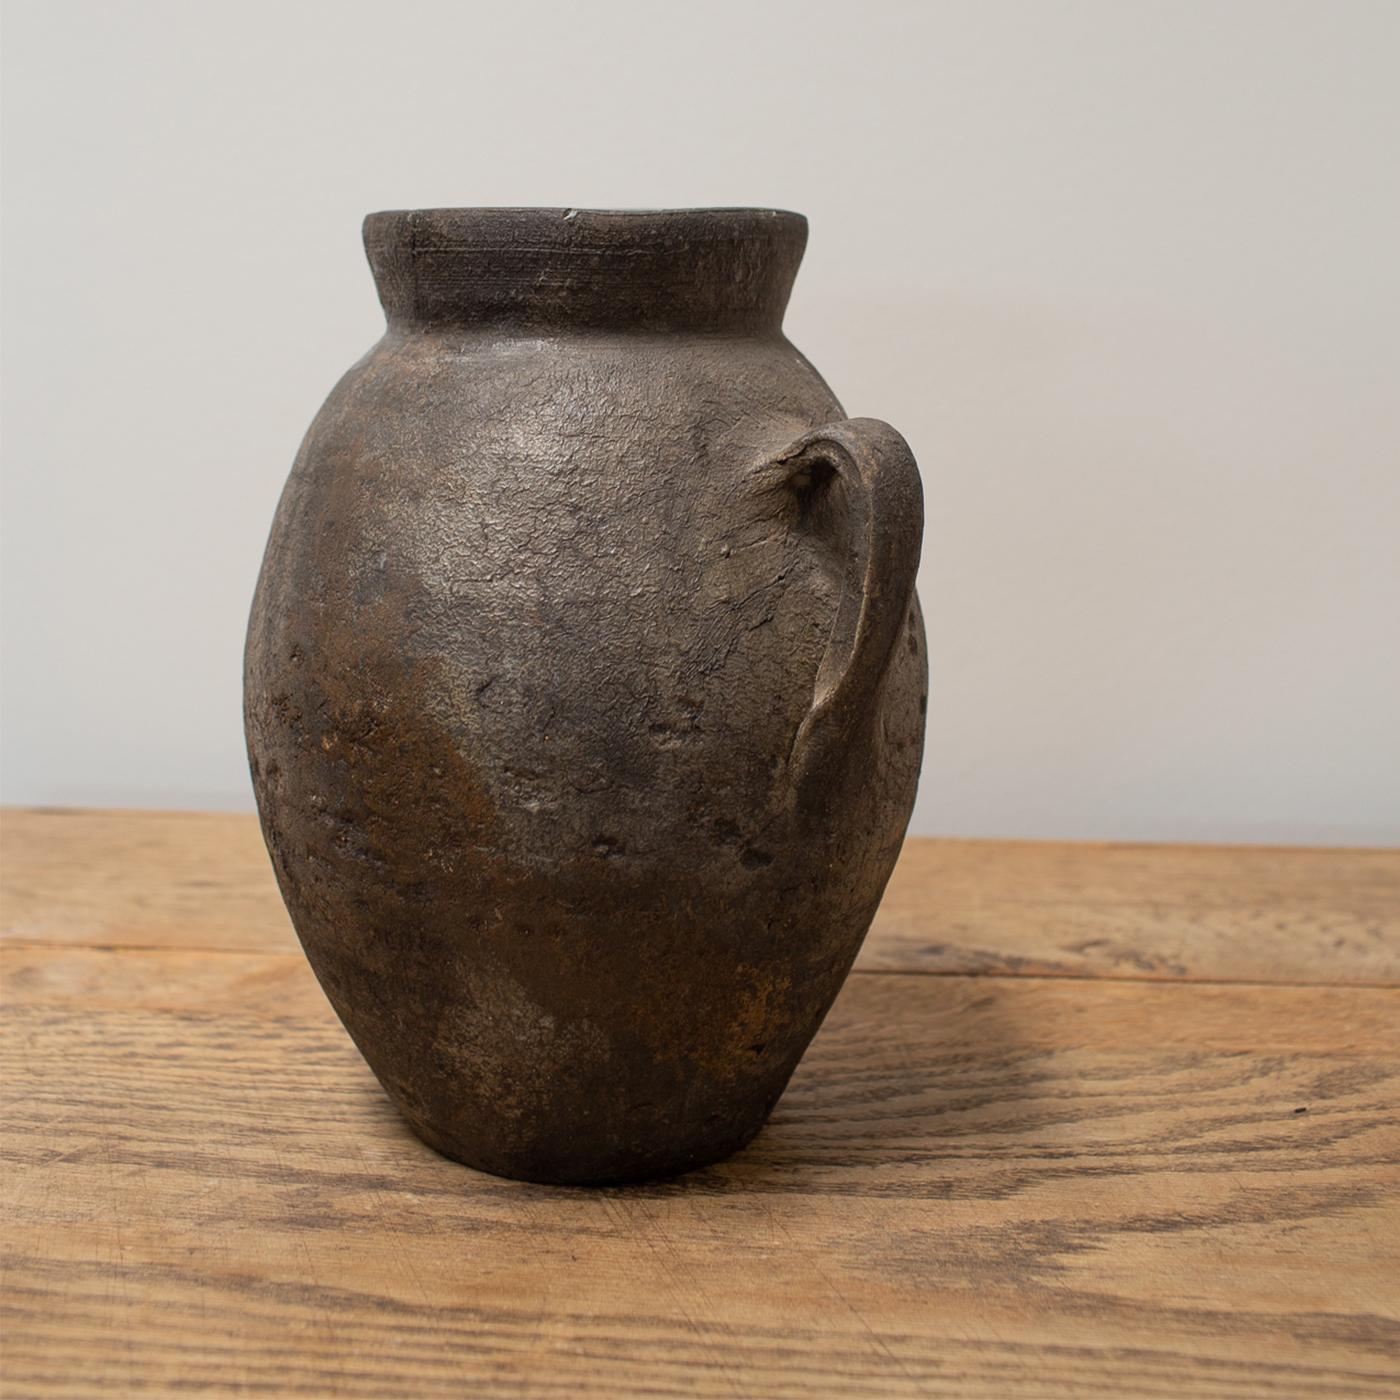 Ce type de vase égyptien a été taillé dans une pierre très dure à l'aide d'un simple foret et était très probablement utilisé pour le stockage d'onguents ou de liquides. Les petites poignées à ergots permettaient de suspendre le navire à l'aide de